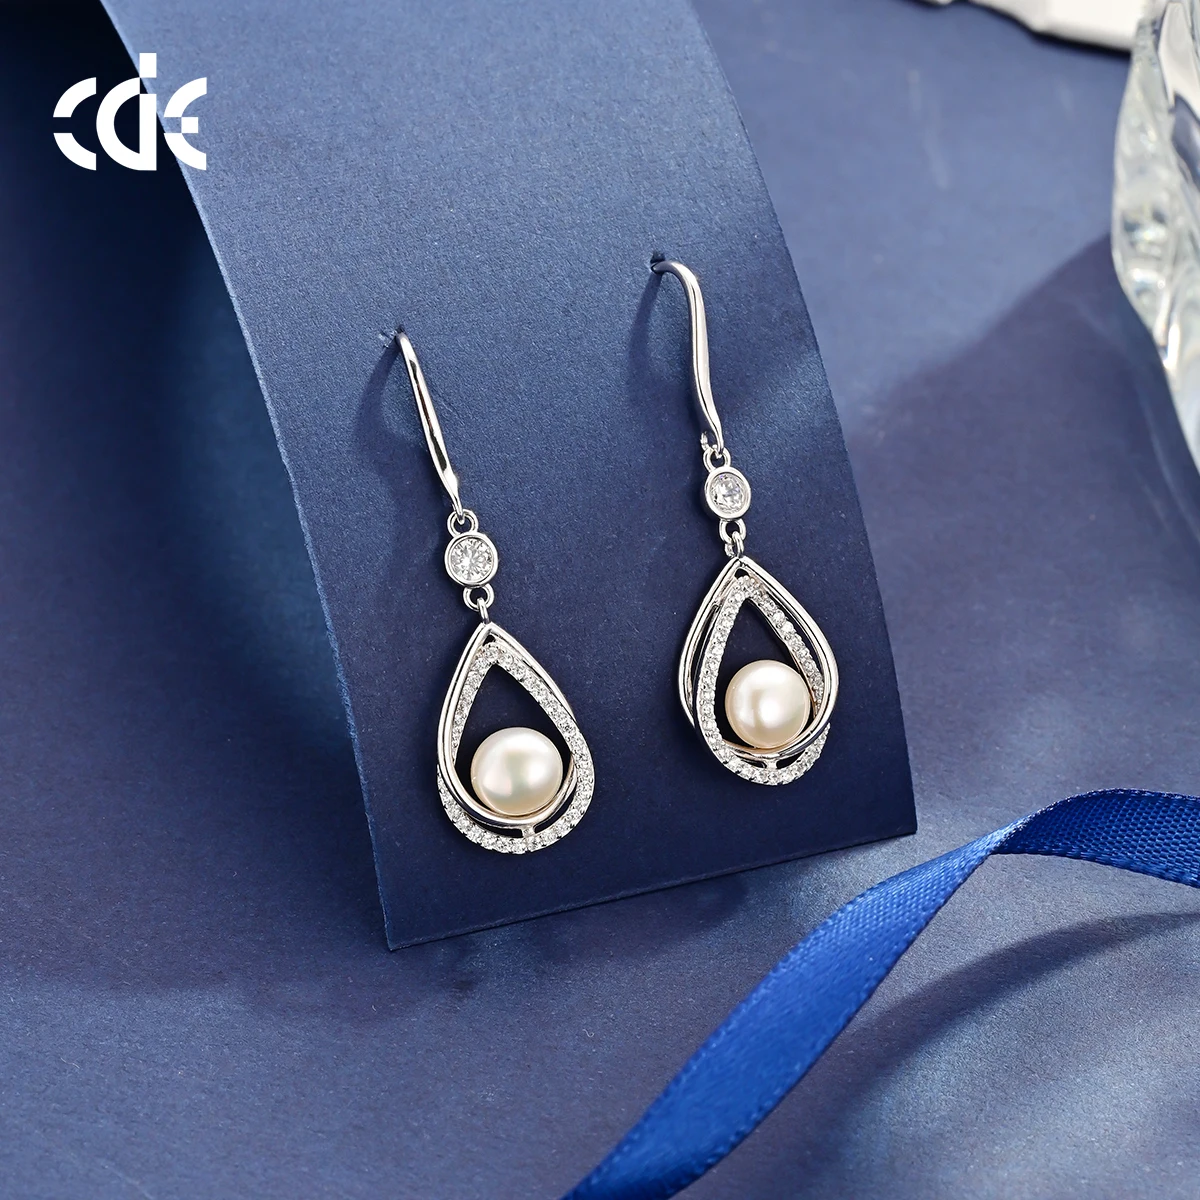 CDE PRYE003 Fine Jewelry 925 Sterling Silver Minimalist Earrings Rhodium Plated Freshwater Pearl Women Drop Earrings